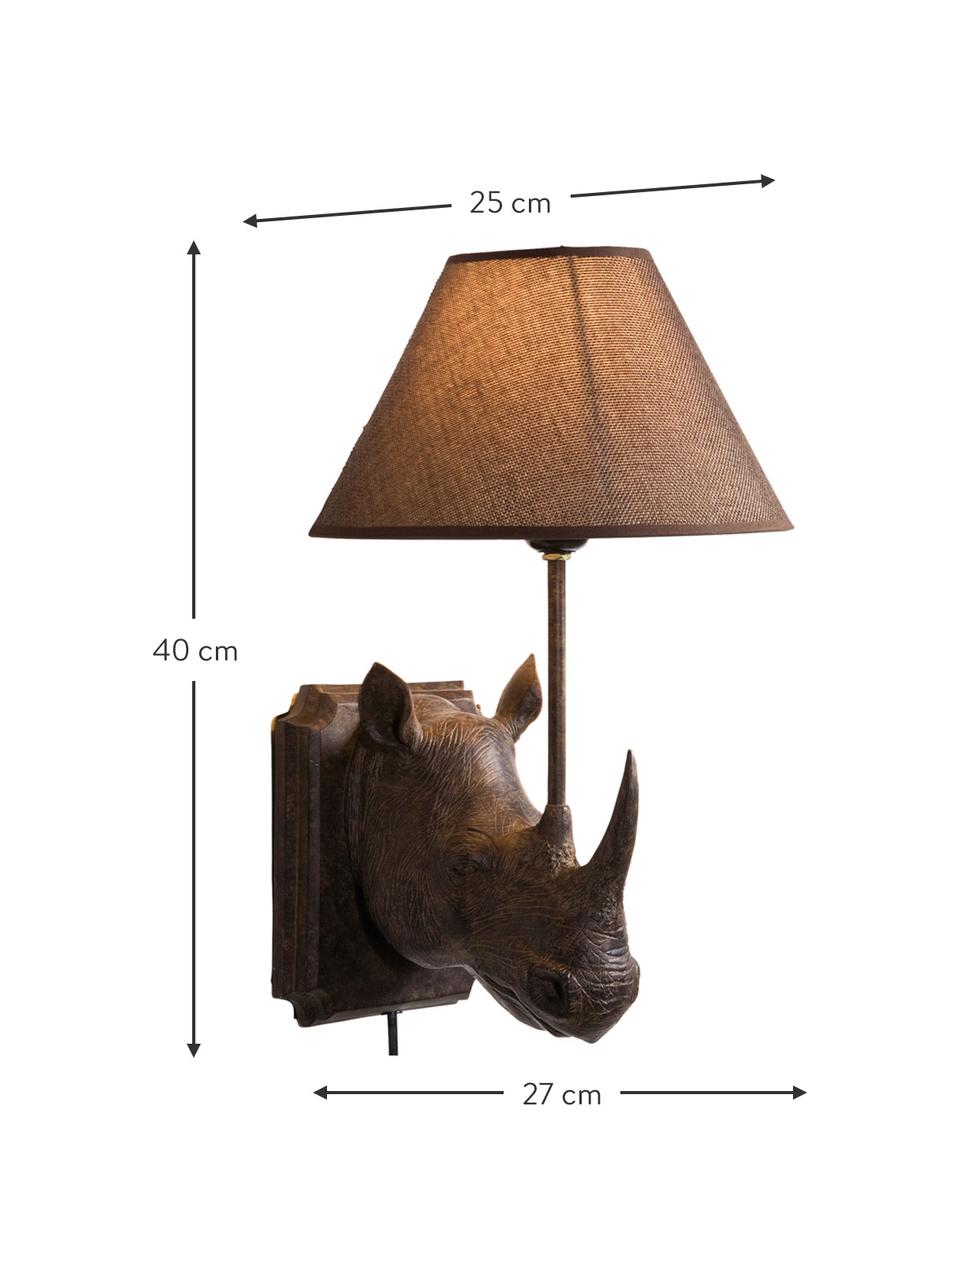 Grote design wandlamp Rhino met stekker, Lamp: polyresin, Lampenkap: linnen, Frame: staal, Bruin, 27 x 40 cm